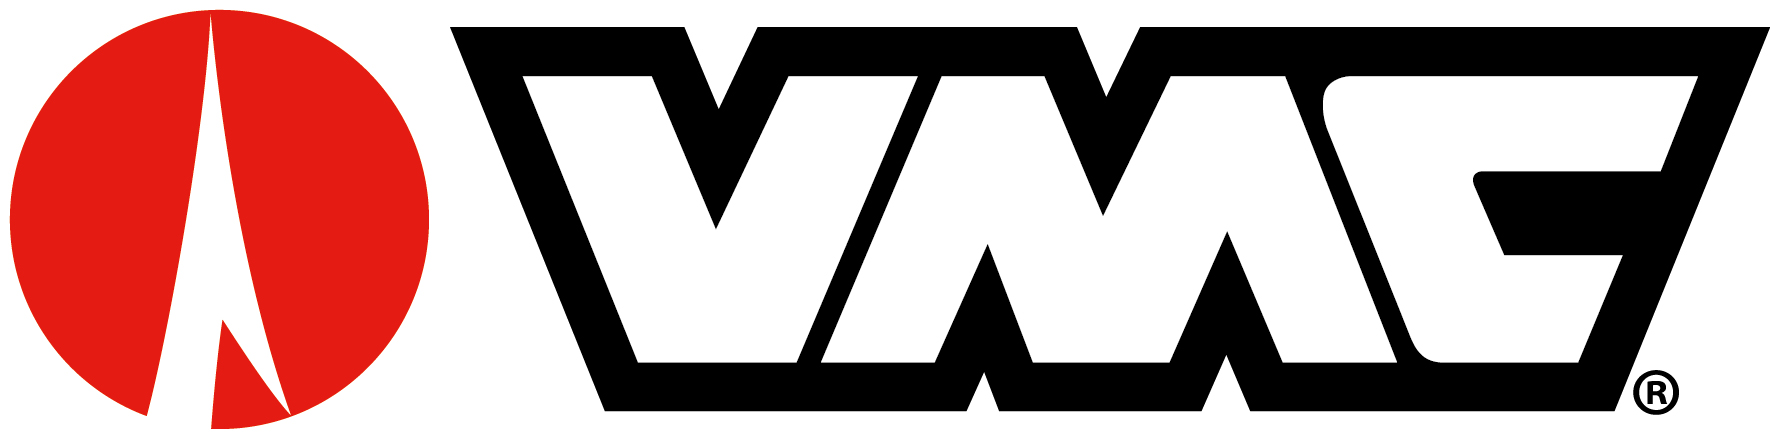 logo-banner-VMC (1)